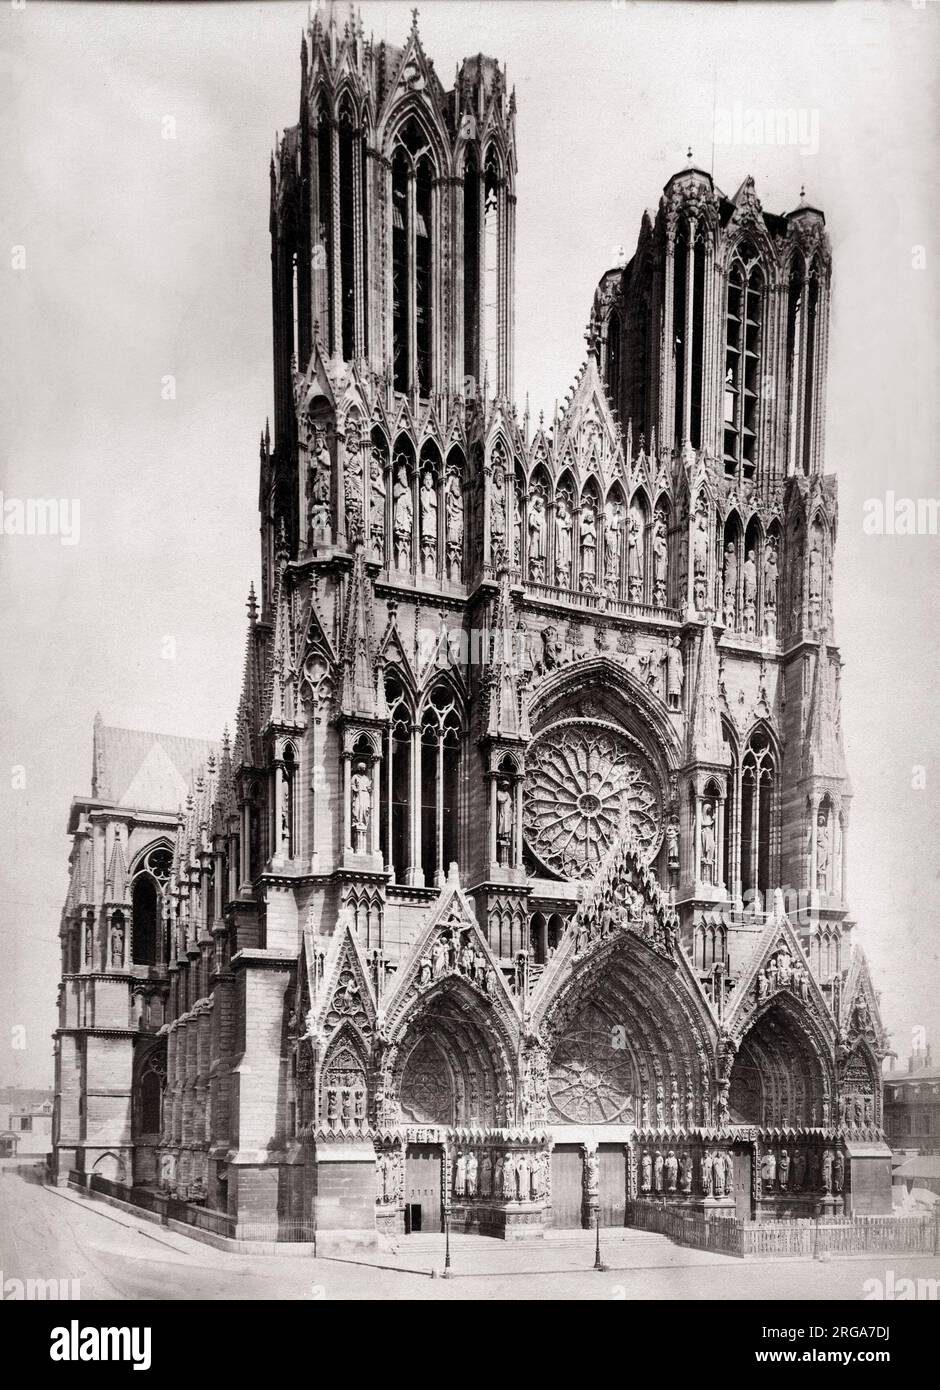 Photographie du 19th ème siècle : la façade de la cathédrale de Reims, France Banque D'Images